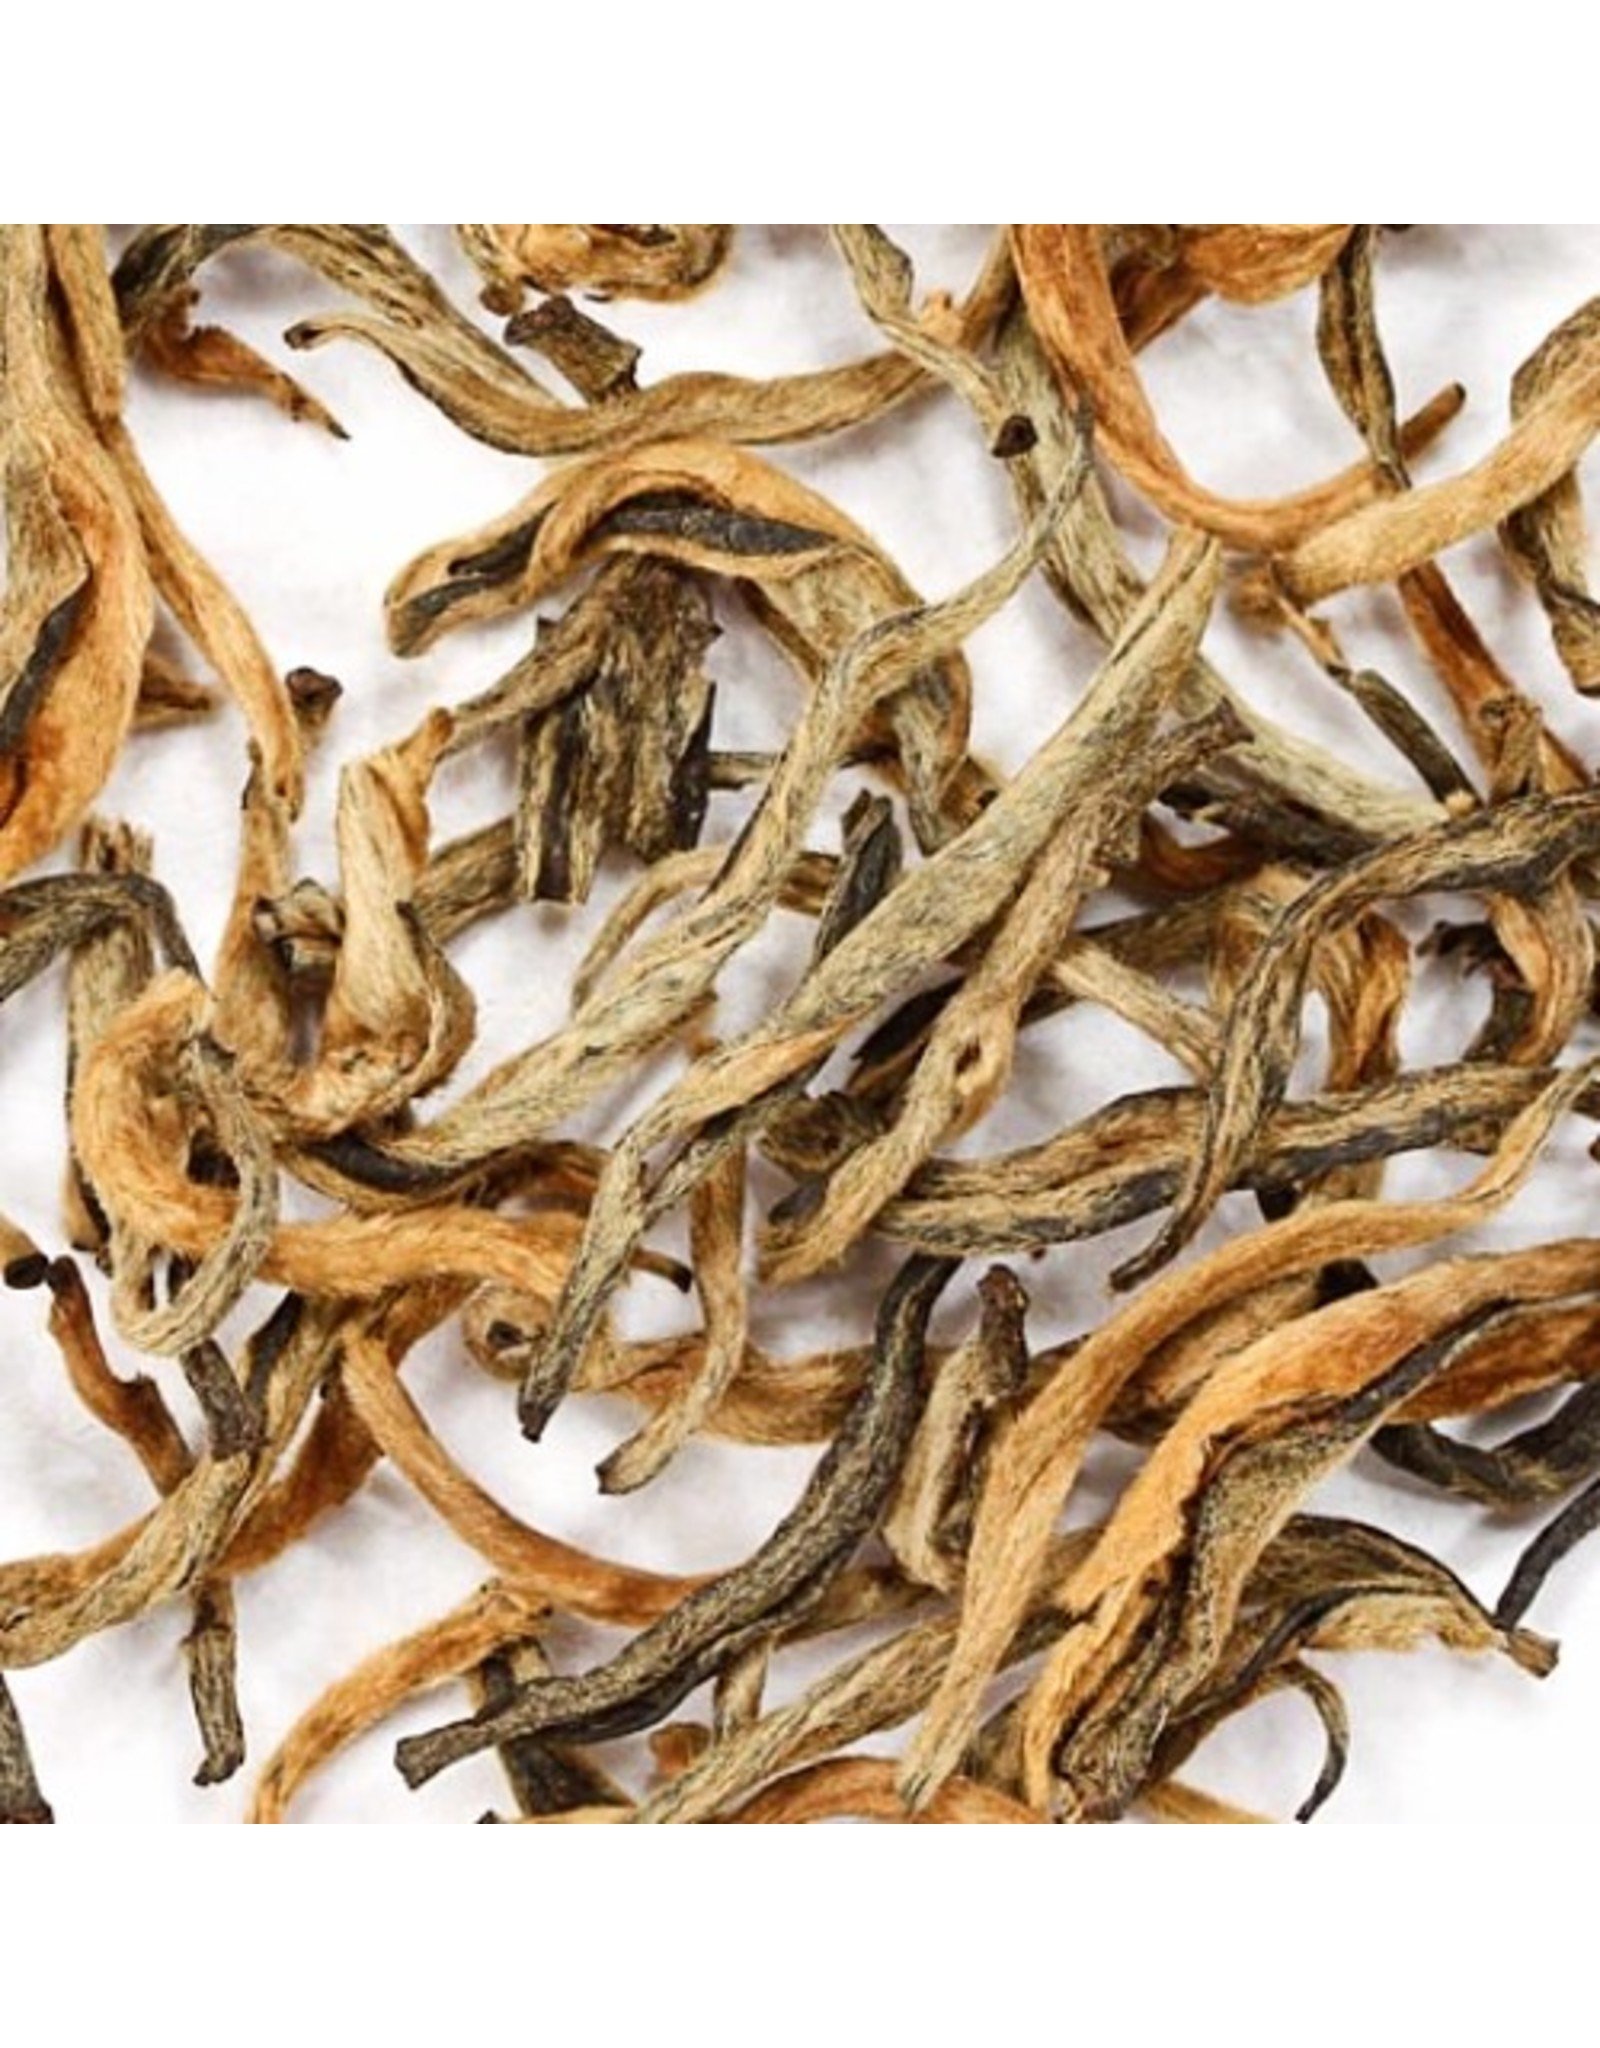 Tea from China Yunnan Gold